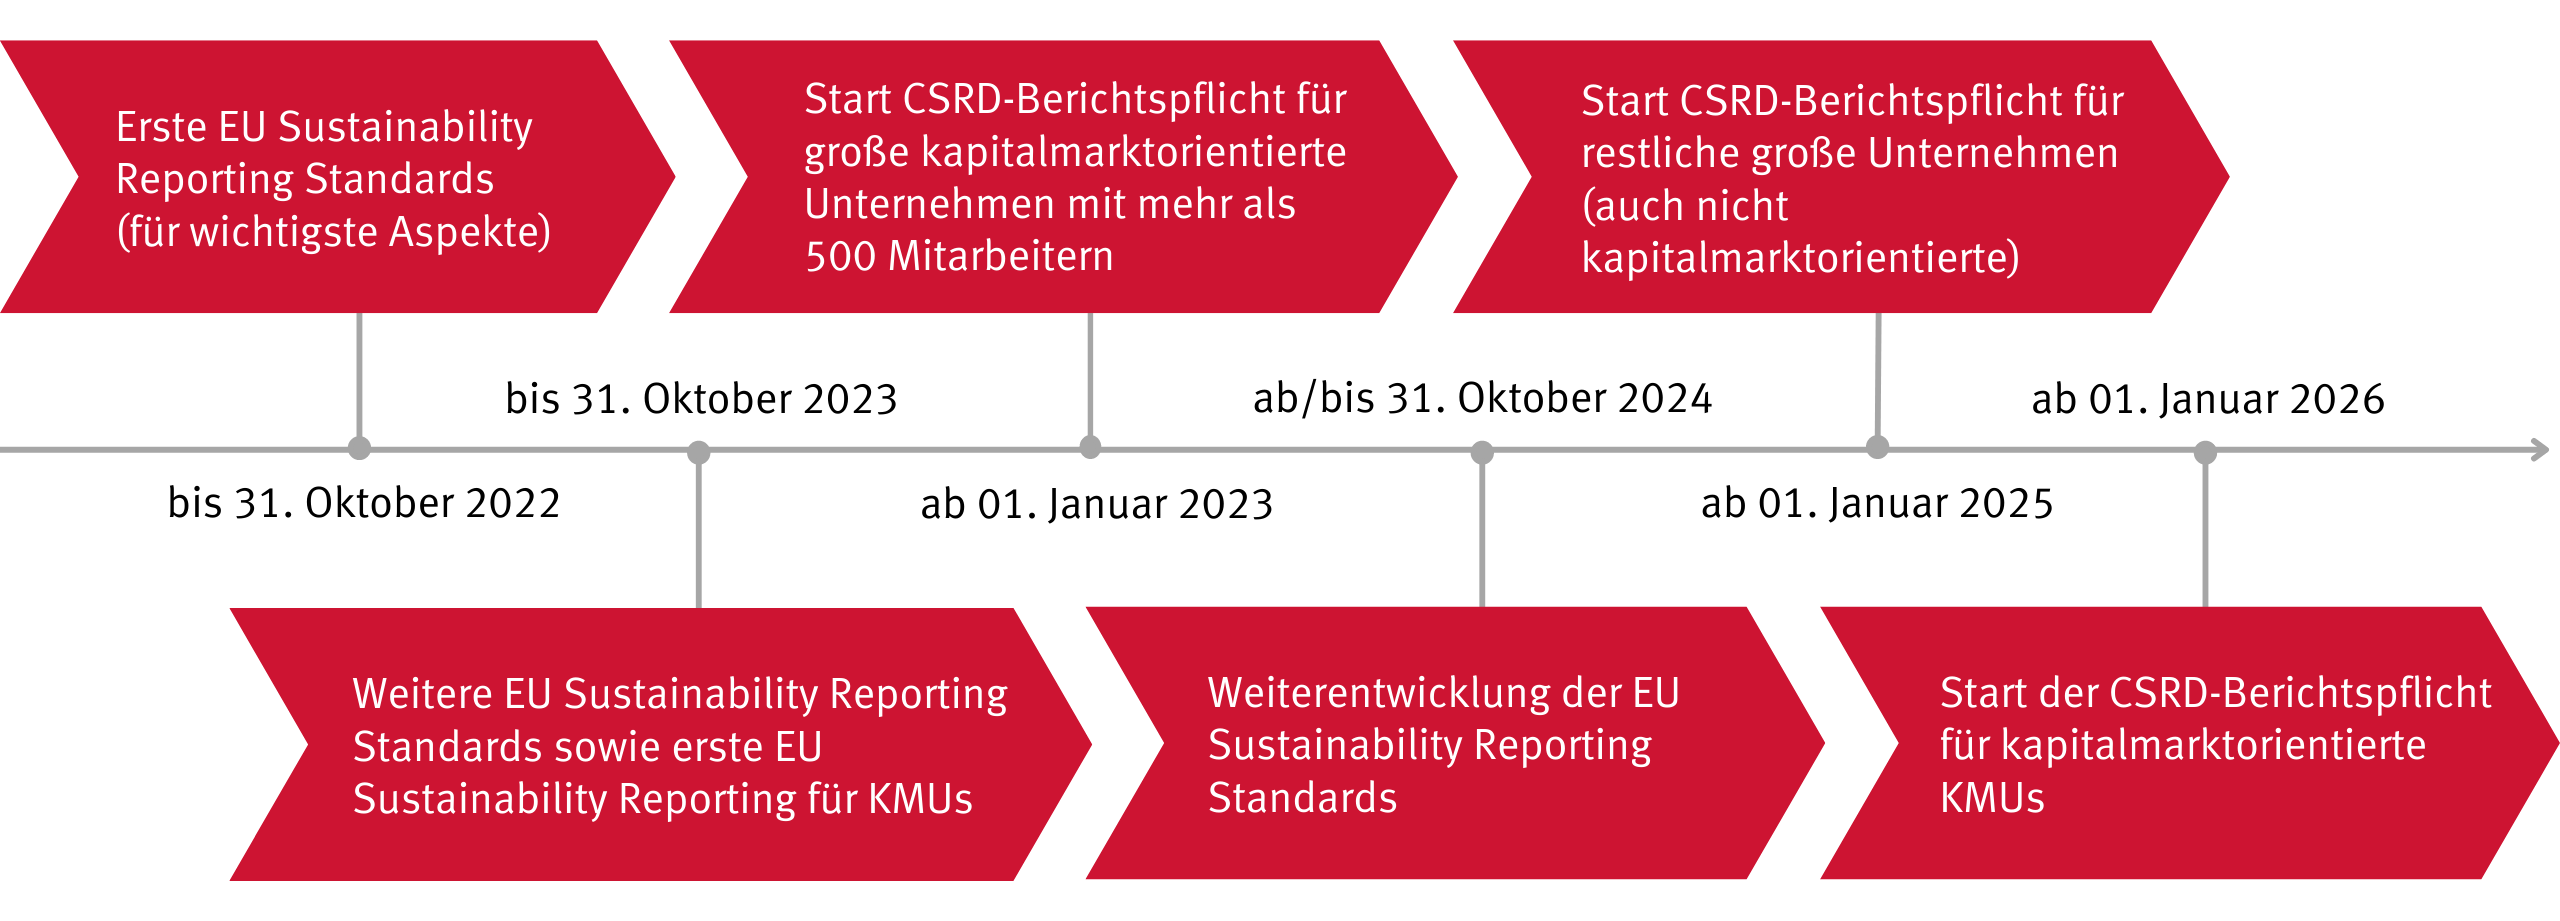 Abbildung 2: Aktueller Zeitplan der CSRD